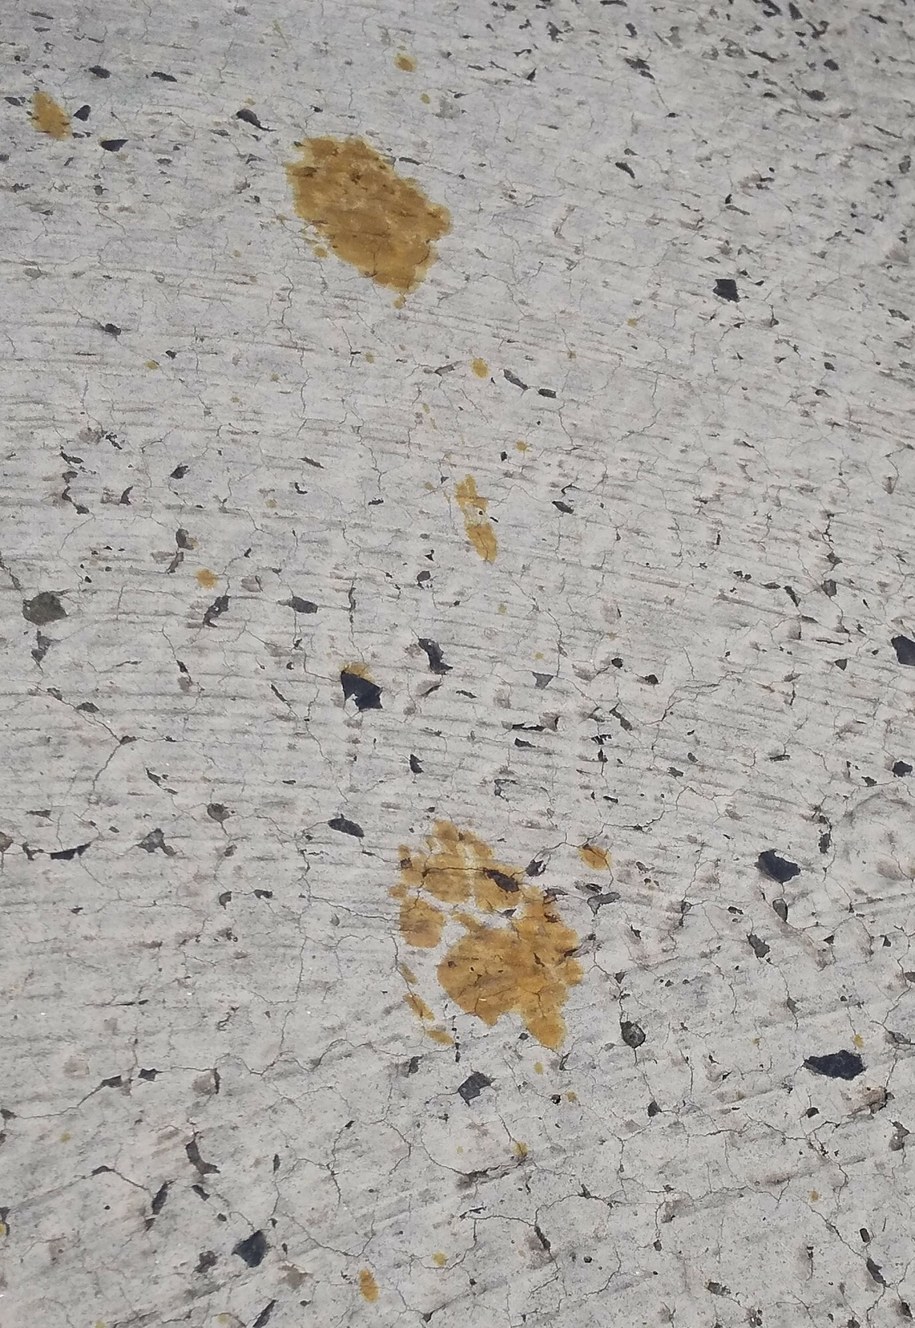 Żółte ślady łap kota na podłodze zakładów metalurgicznych /Handout /East News/AFP